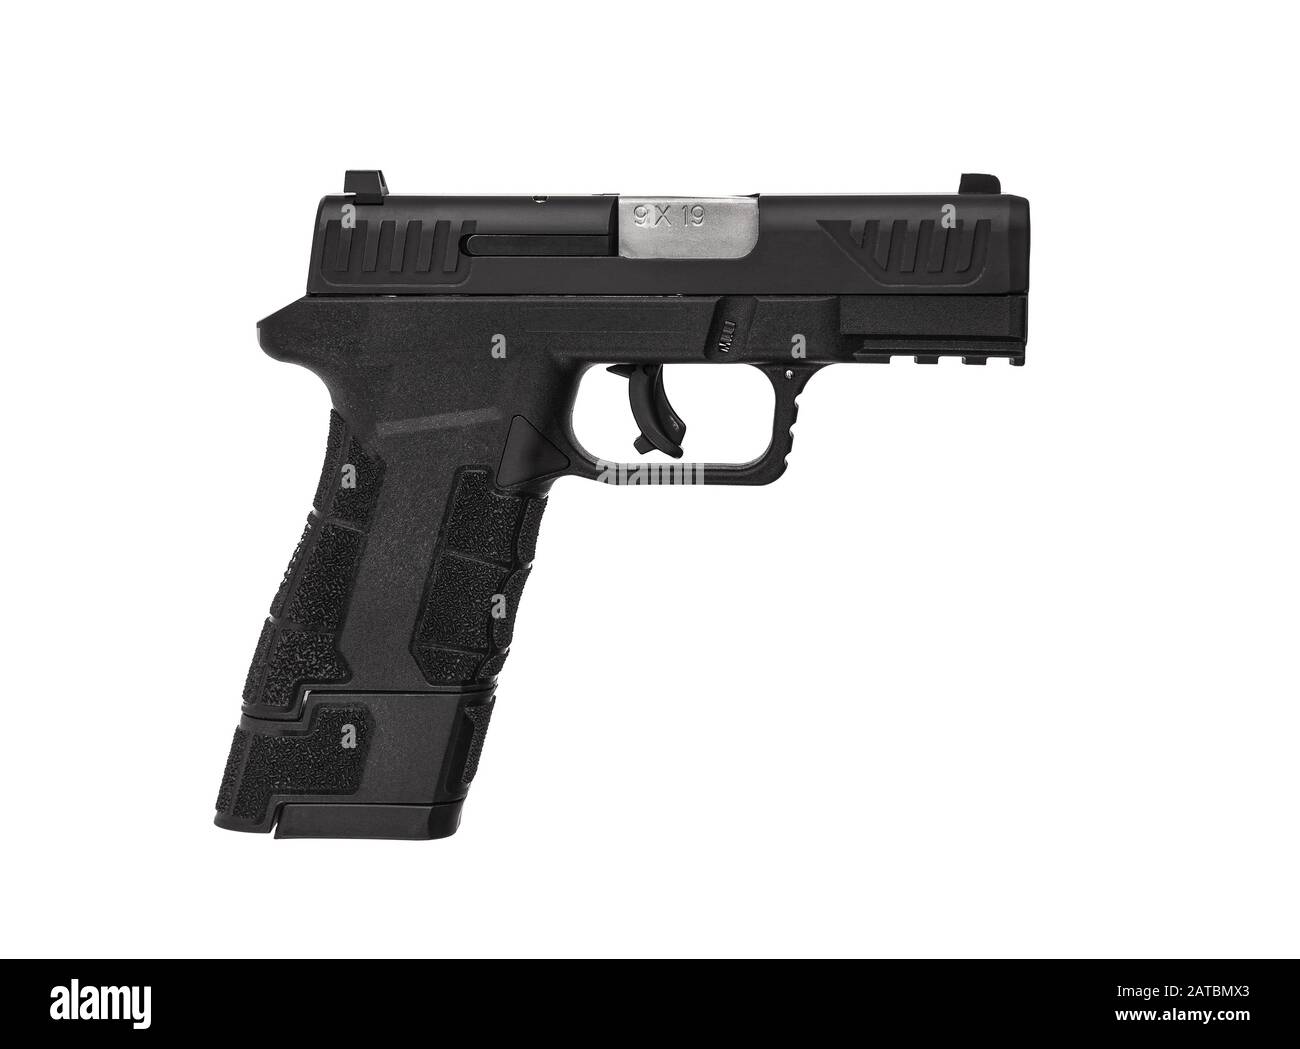 Gewehr Pistole schwarz auf weißem Hintergrund. Kurz- und Sammelsicherung für Sport und Selbstverteidigung. Bewaffnung für Polizei, Spezialeinheiten und der a Stockfoto